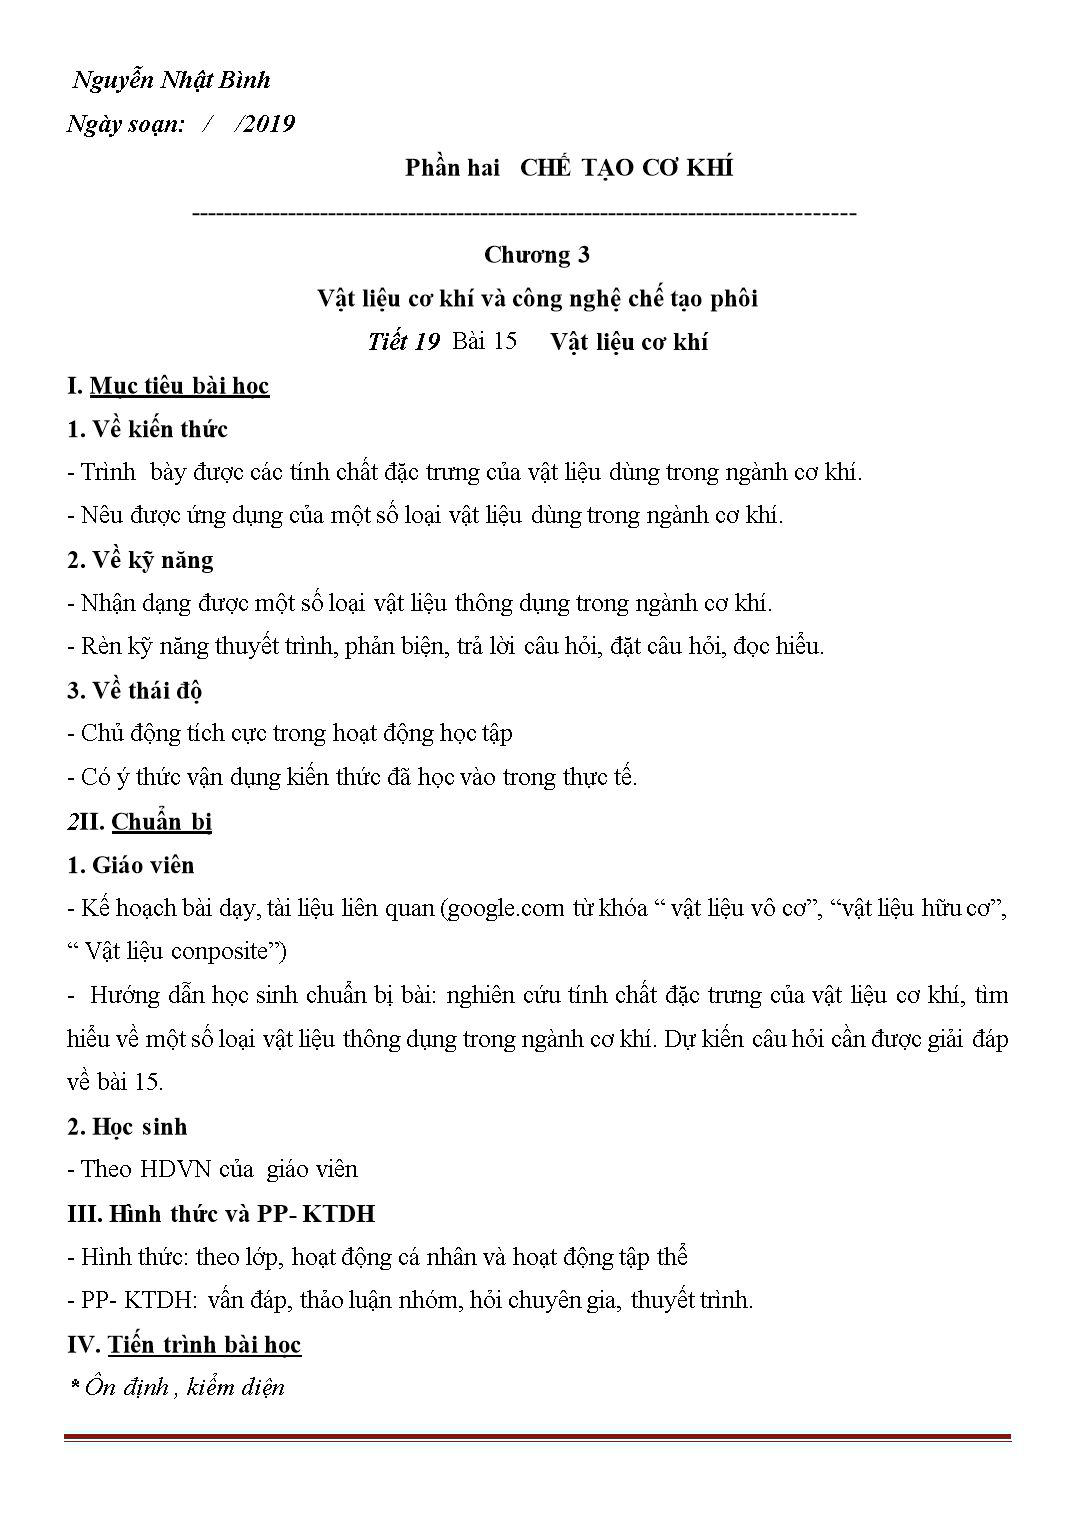 Giáo án Công nghệ Lớp 11 - Học kì 2 - Nguyễn Nhật Bình trang 1